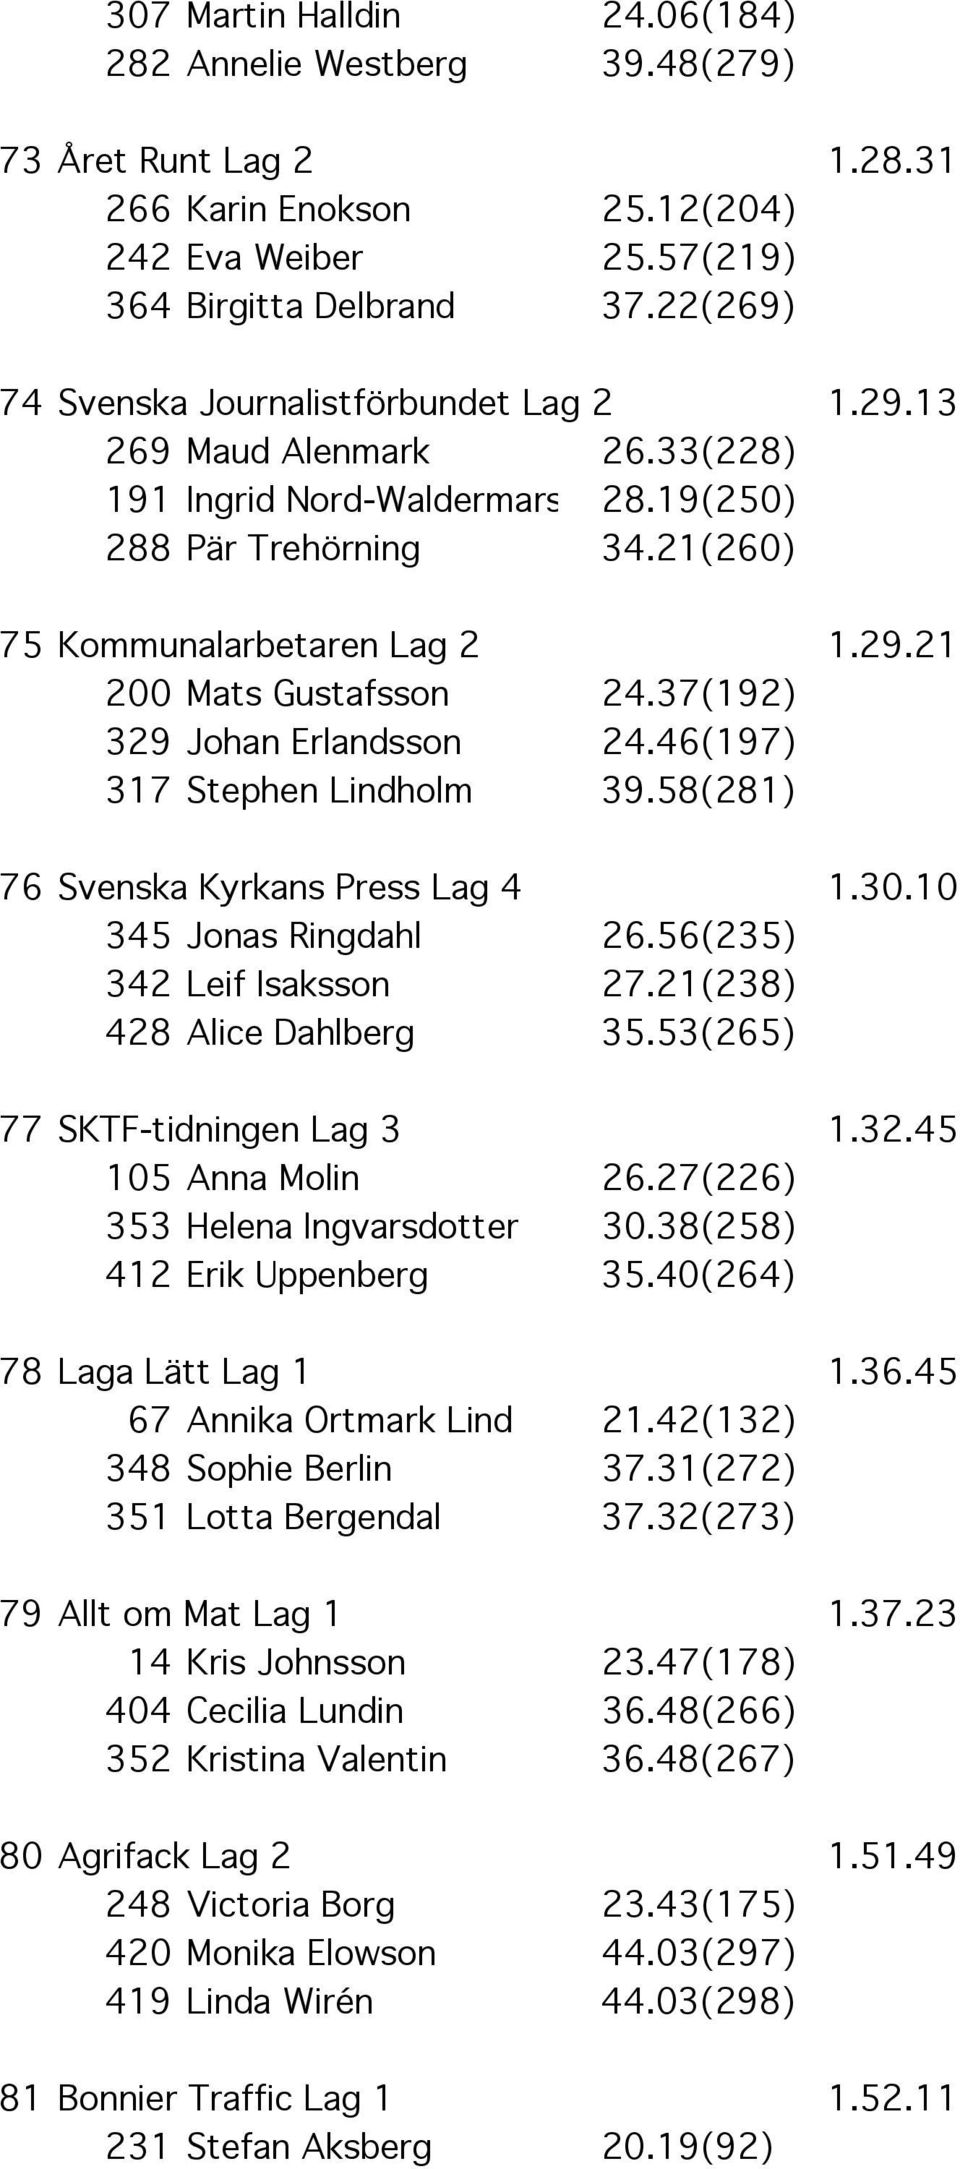 37(192) 329 Johan Erlandsson 24.46(197) 317 Stephen Lindholm 39.58(281) 76 Svenska Kyrkans Press Lag 4 1.30.10 345 Jonas Ringdahl 26.56(235) 342 Leif Isaksson 27.21(238) 428 Alice Dahlberg 35.